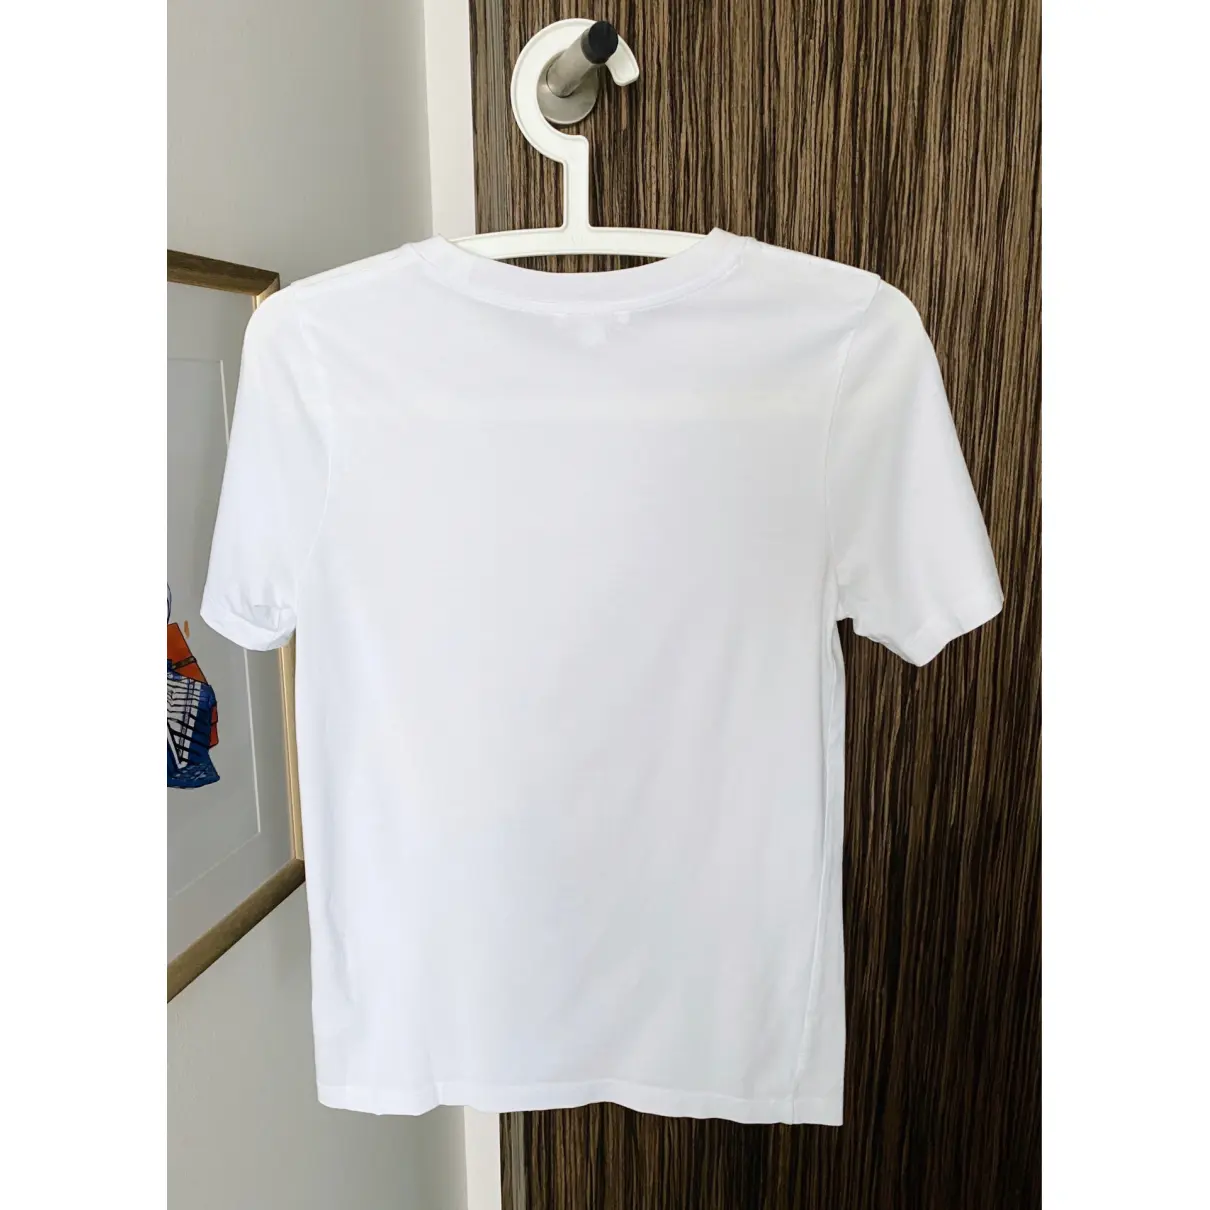 Buy Cos T-shirt online